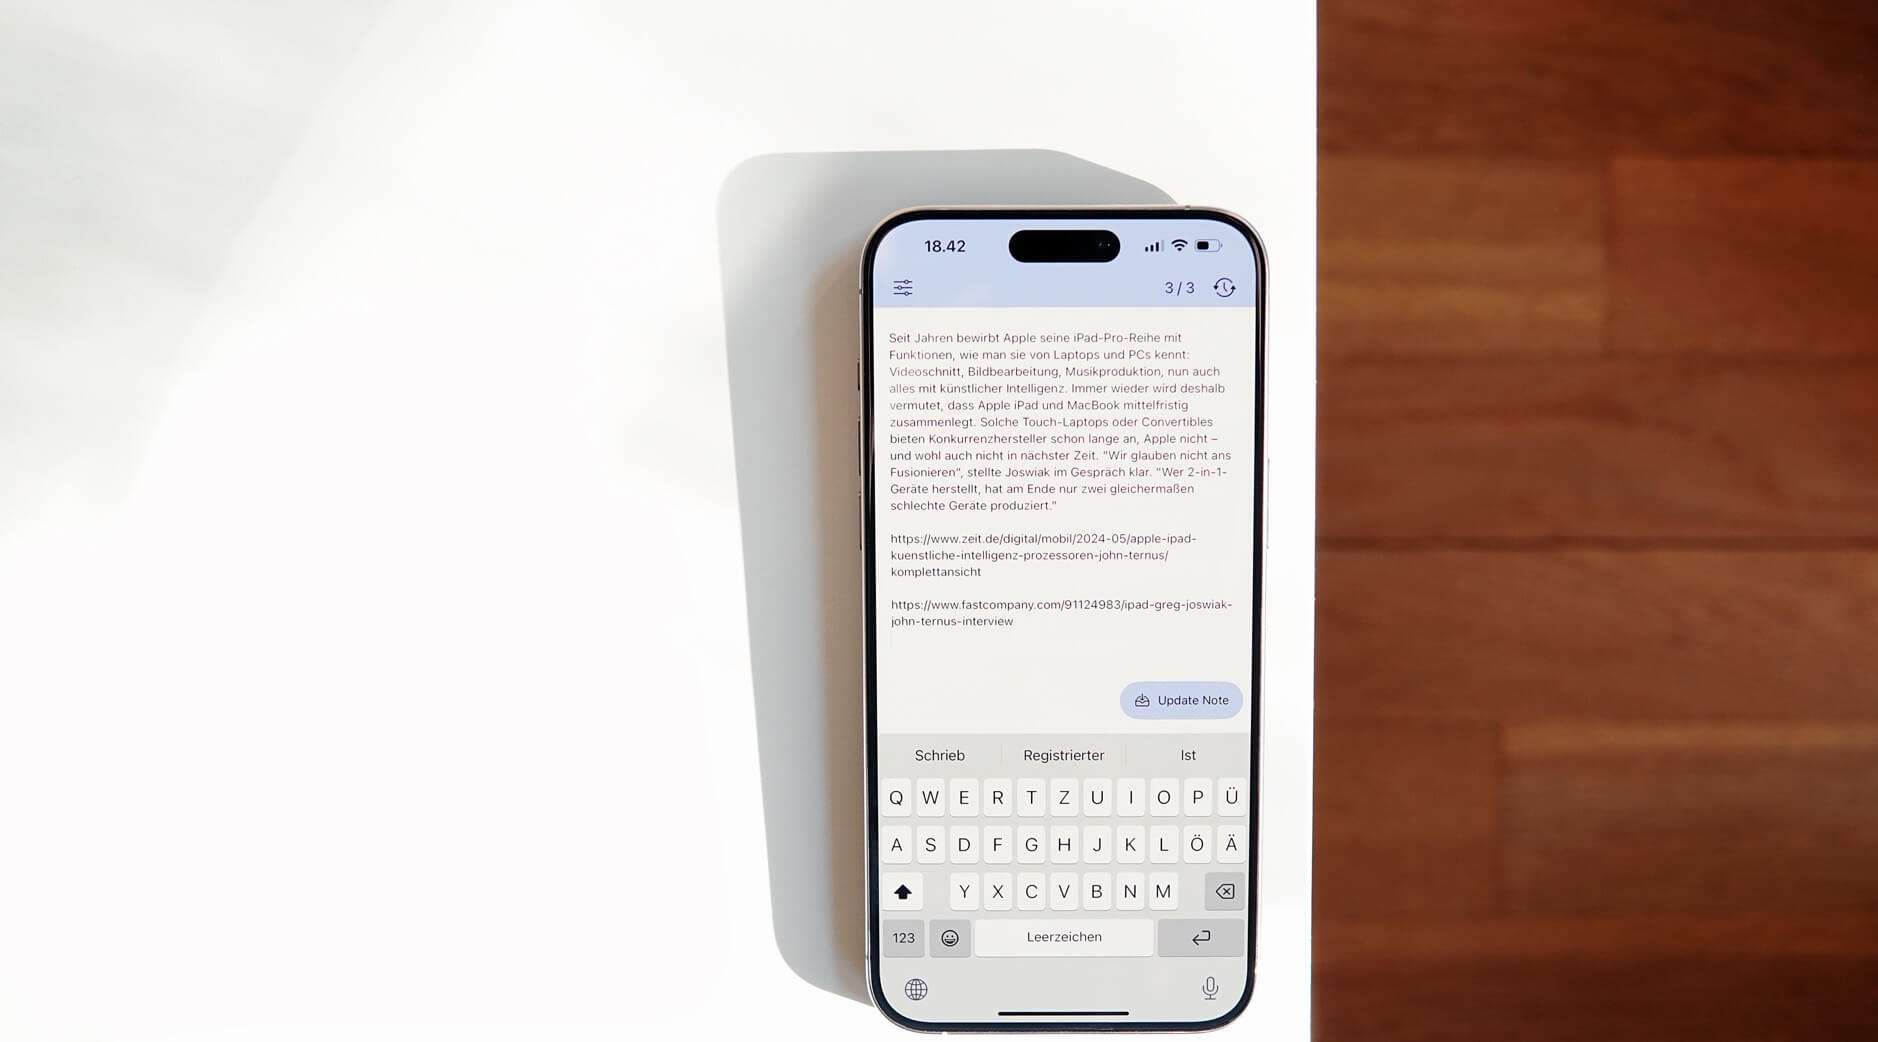 Das Bild zeigt ein modernes Smartphone mit einem großen Bildschirm und einer virtuellen Tastatur, das auf einem weißen Tisch in einer hellen Umgebung liegt. Auf dem Bildschirm ist ein Textfeld in deutscher Sprache zu sehen, das anscheinend eine Nachricht oder einen Artikel darstellt.